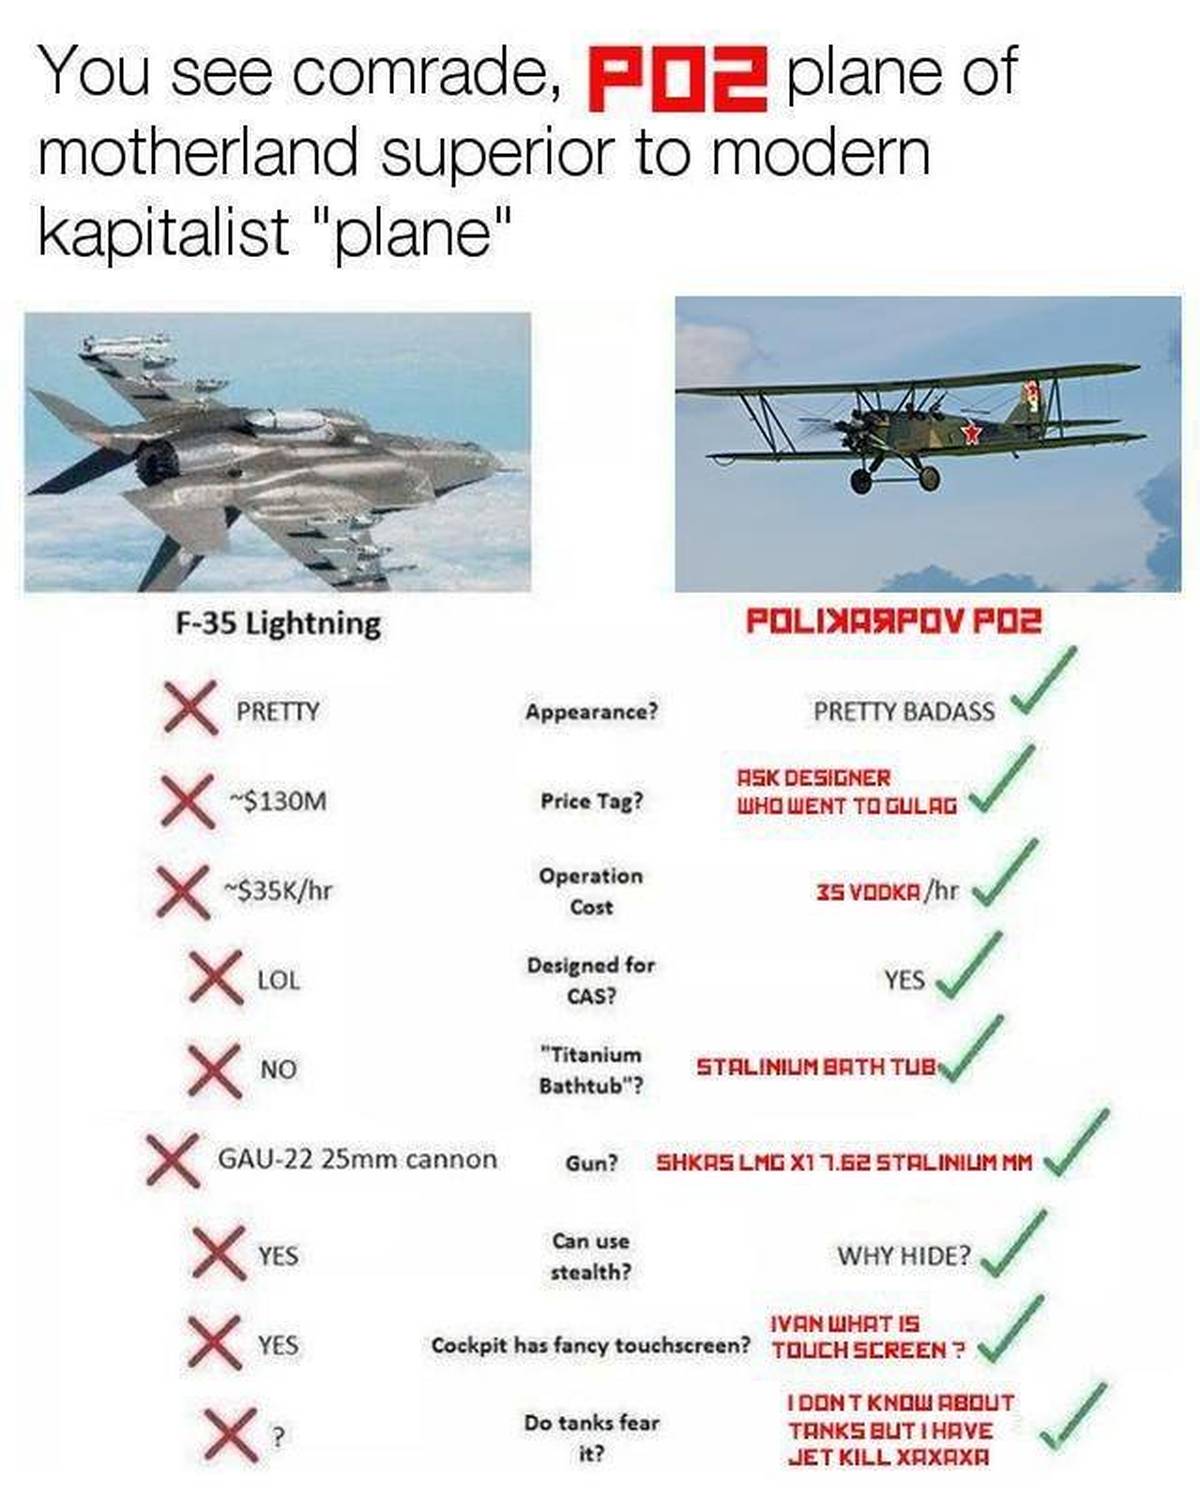 Polikarpov Po-2 Vs. Modern Kapitalist "Plane"